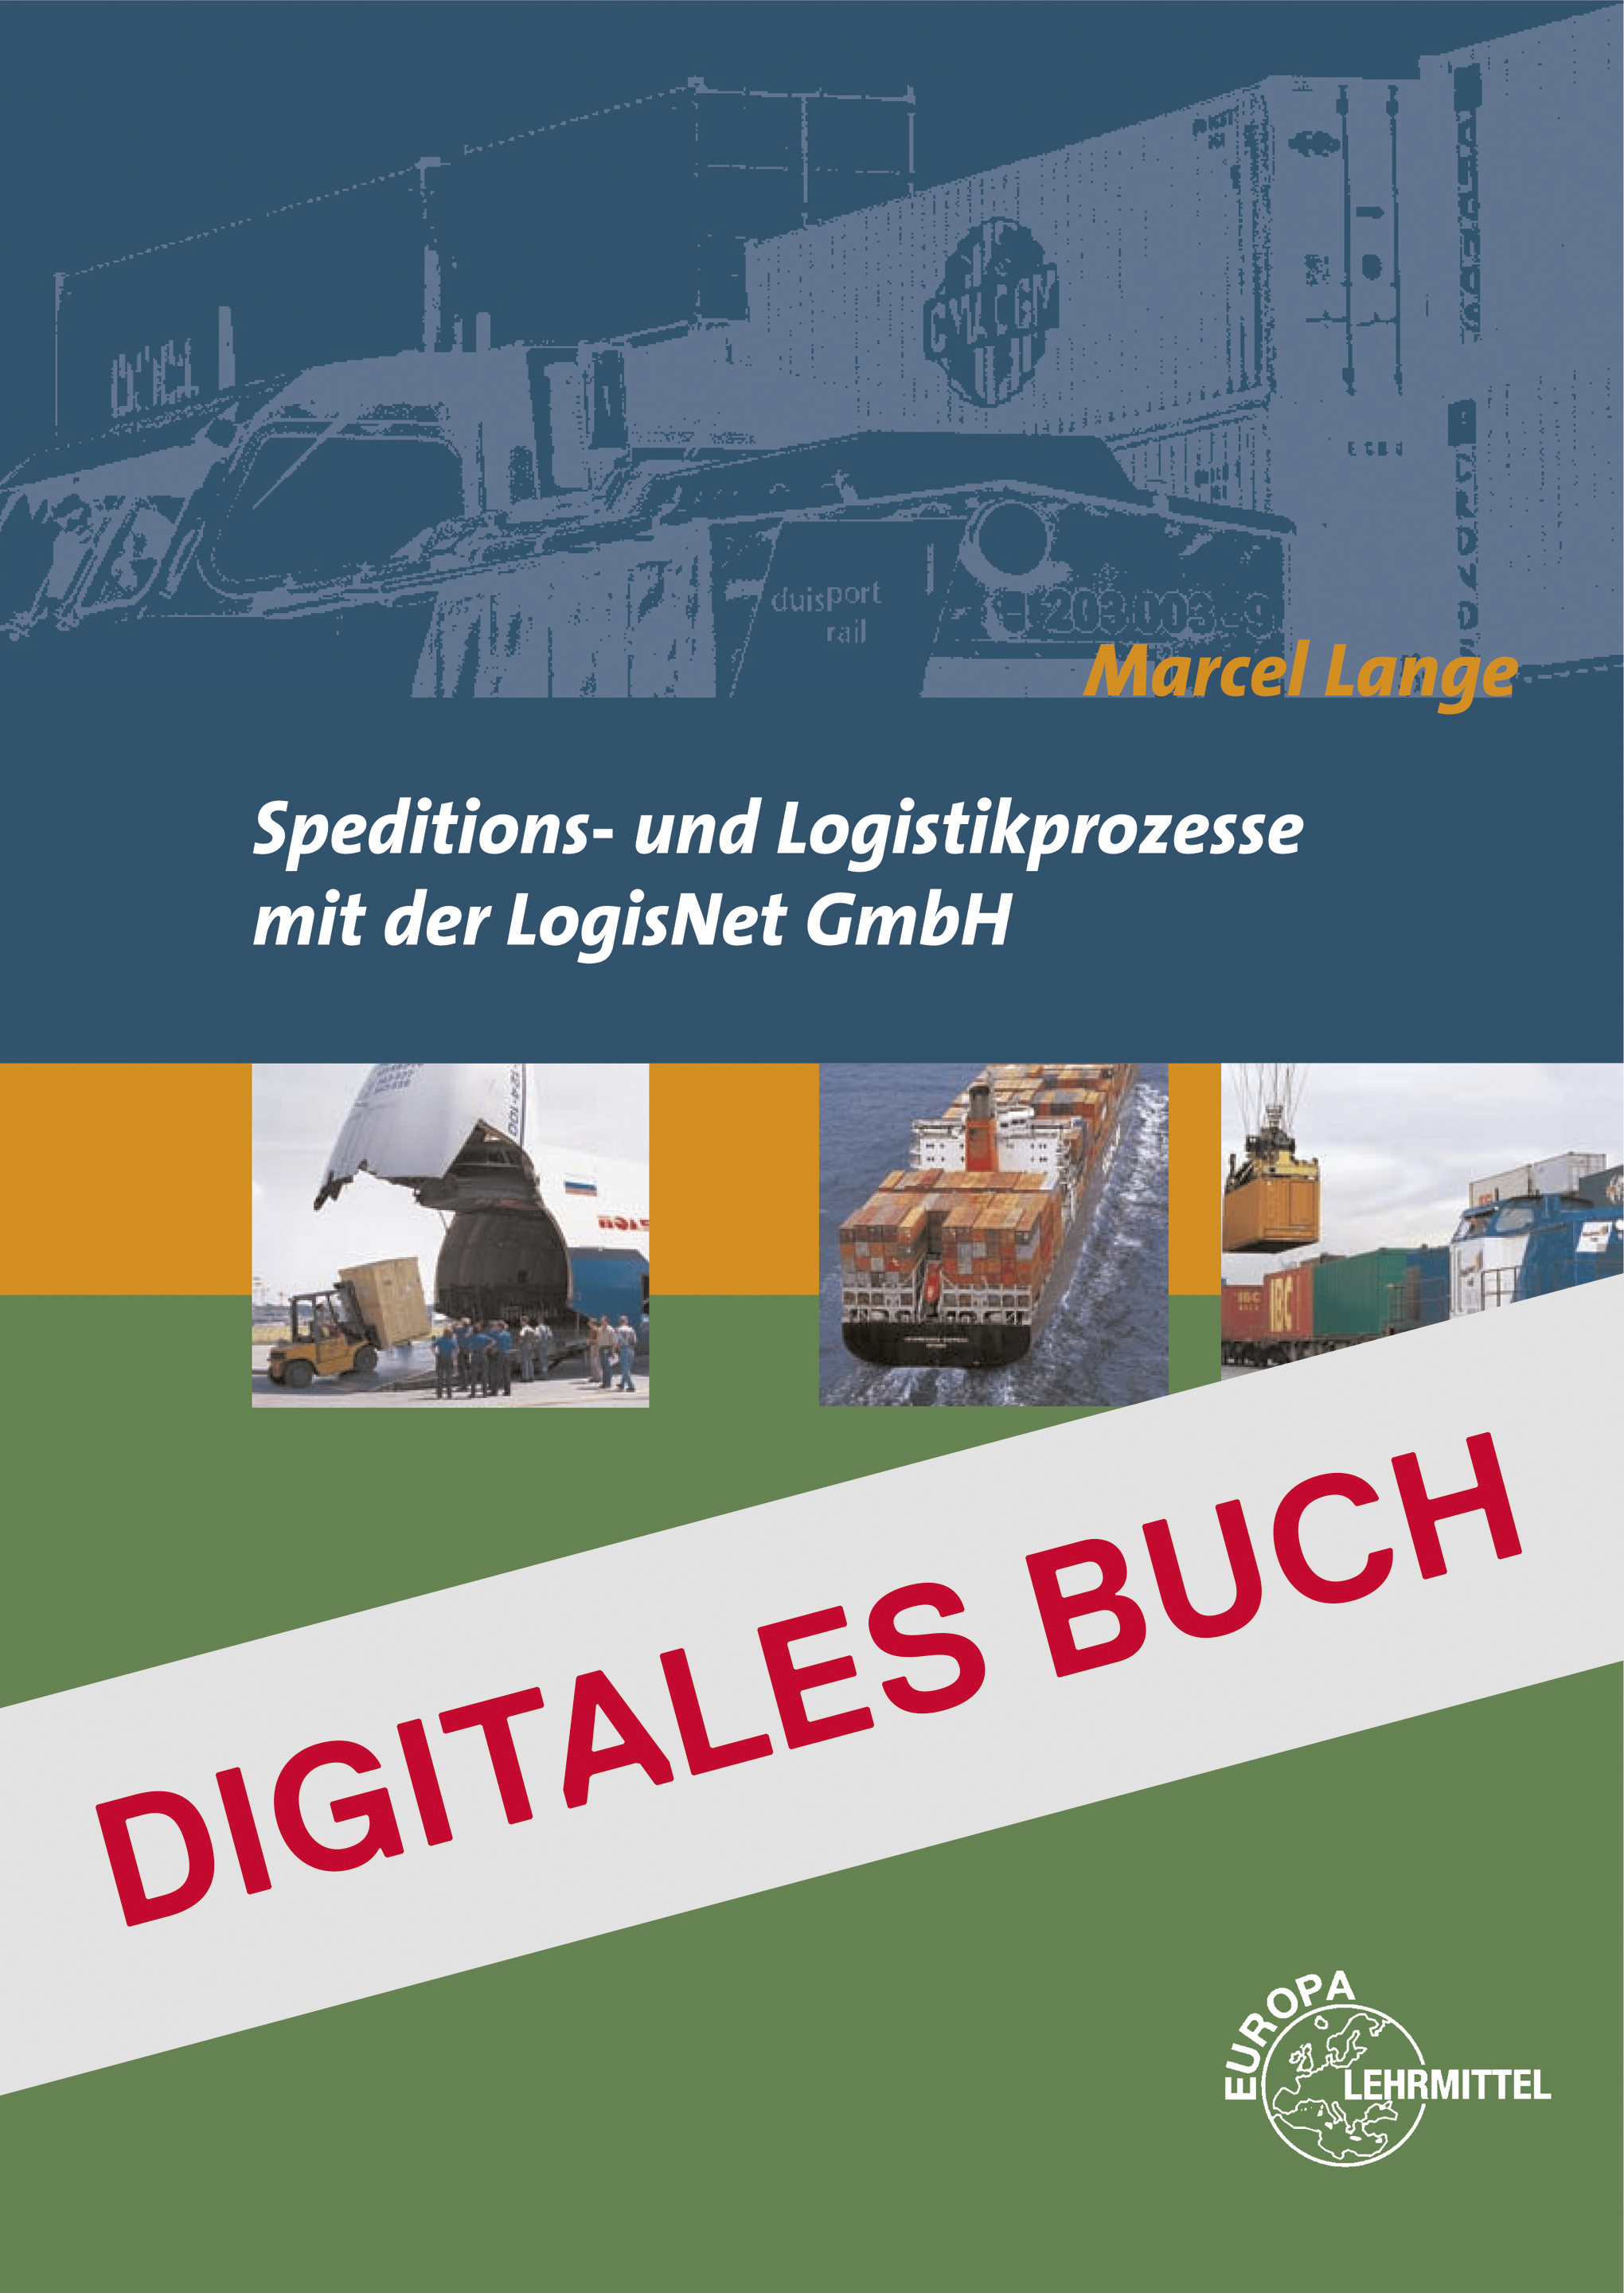 Speditions- und Logistikprozesse mit der LogisNet GmbH - Digitales Buch